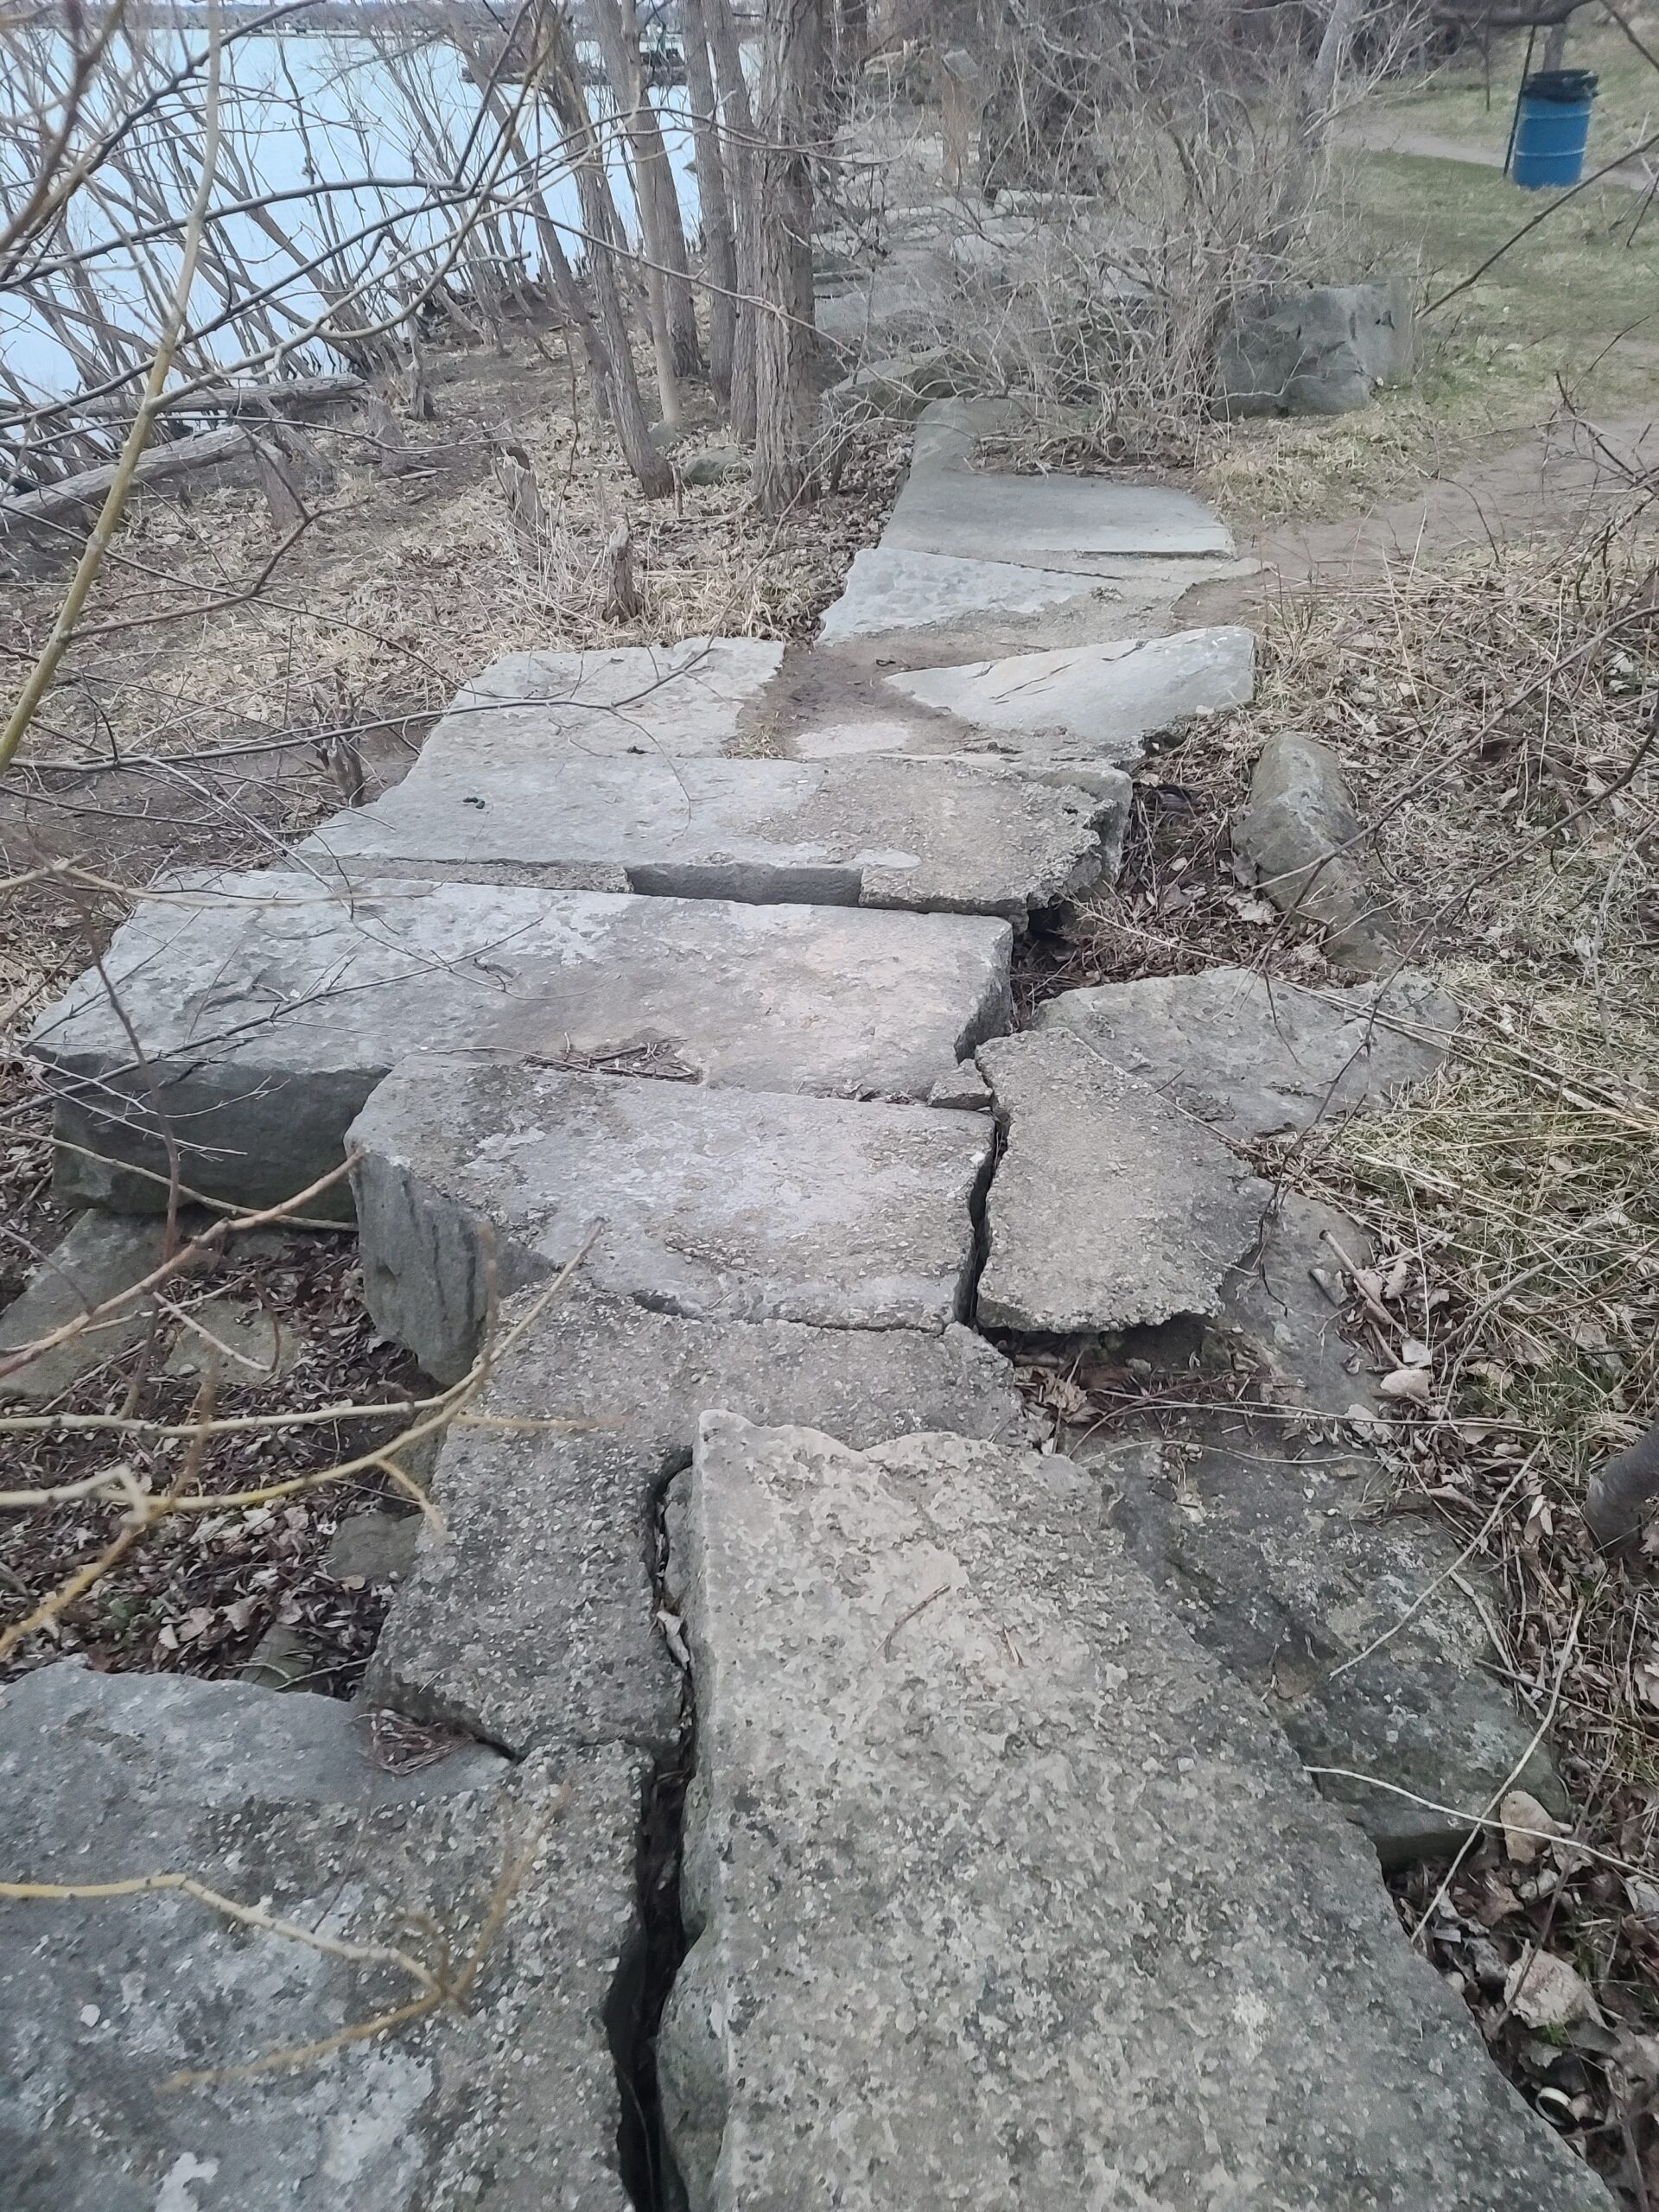 A rocky path along Lake Ontario.